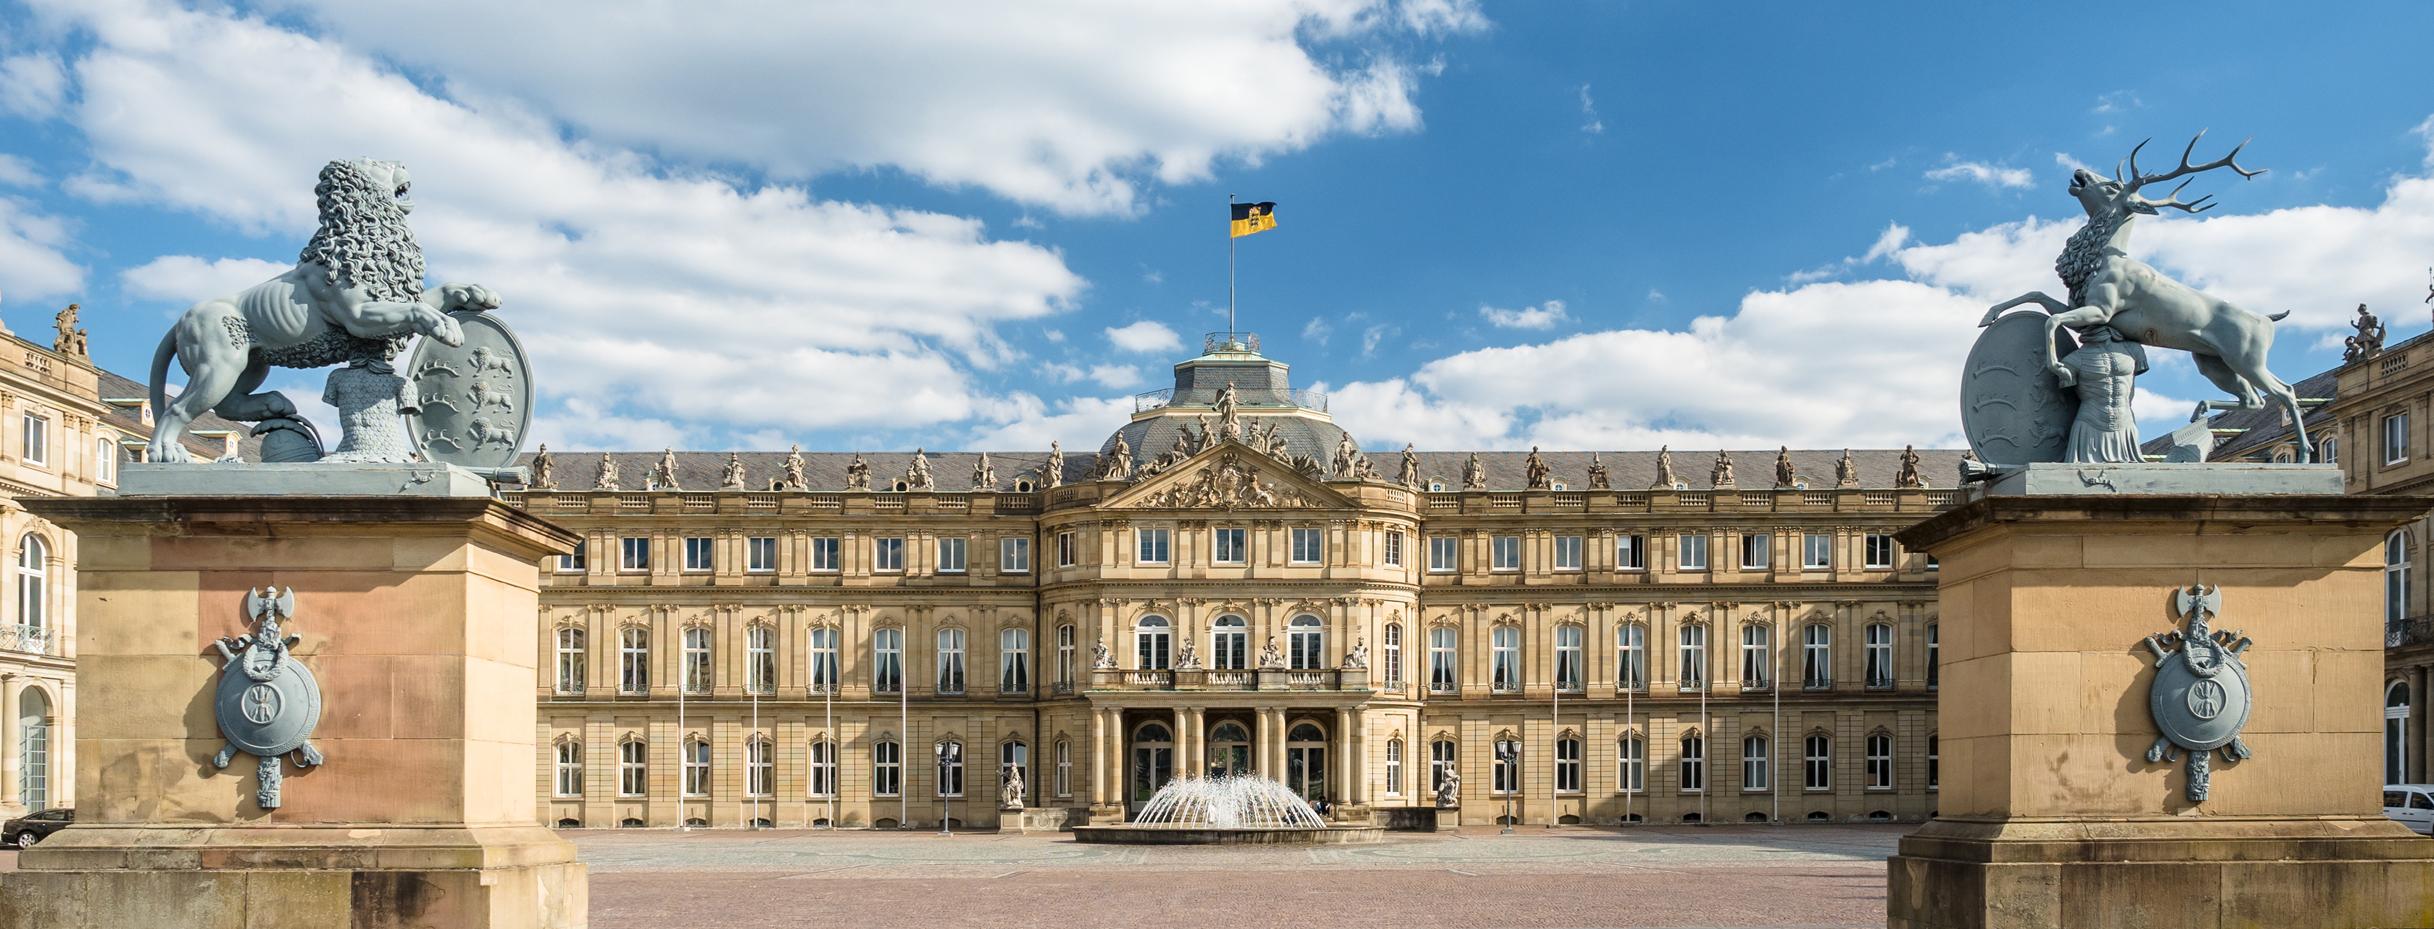 Neues Schloss in Stuttgart (Quelle: © Manuel Schönfeld, Fotolia)